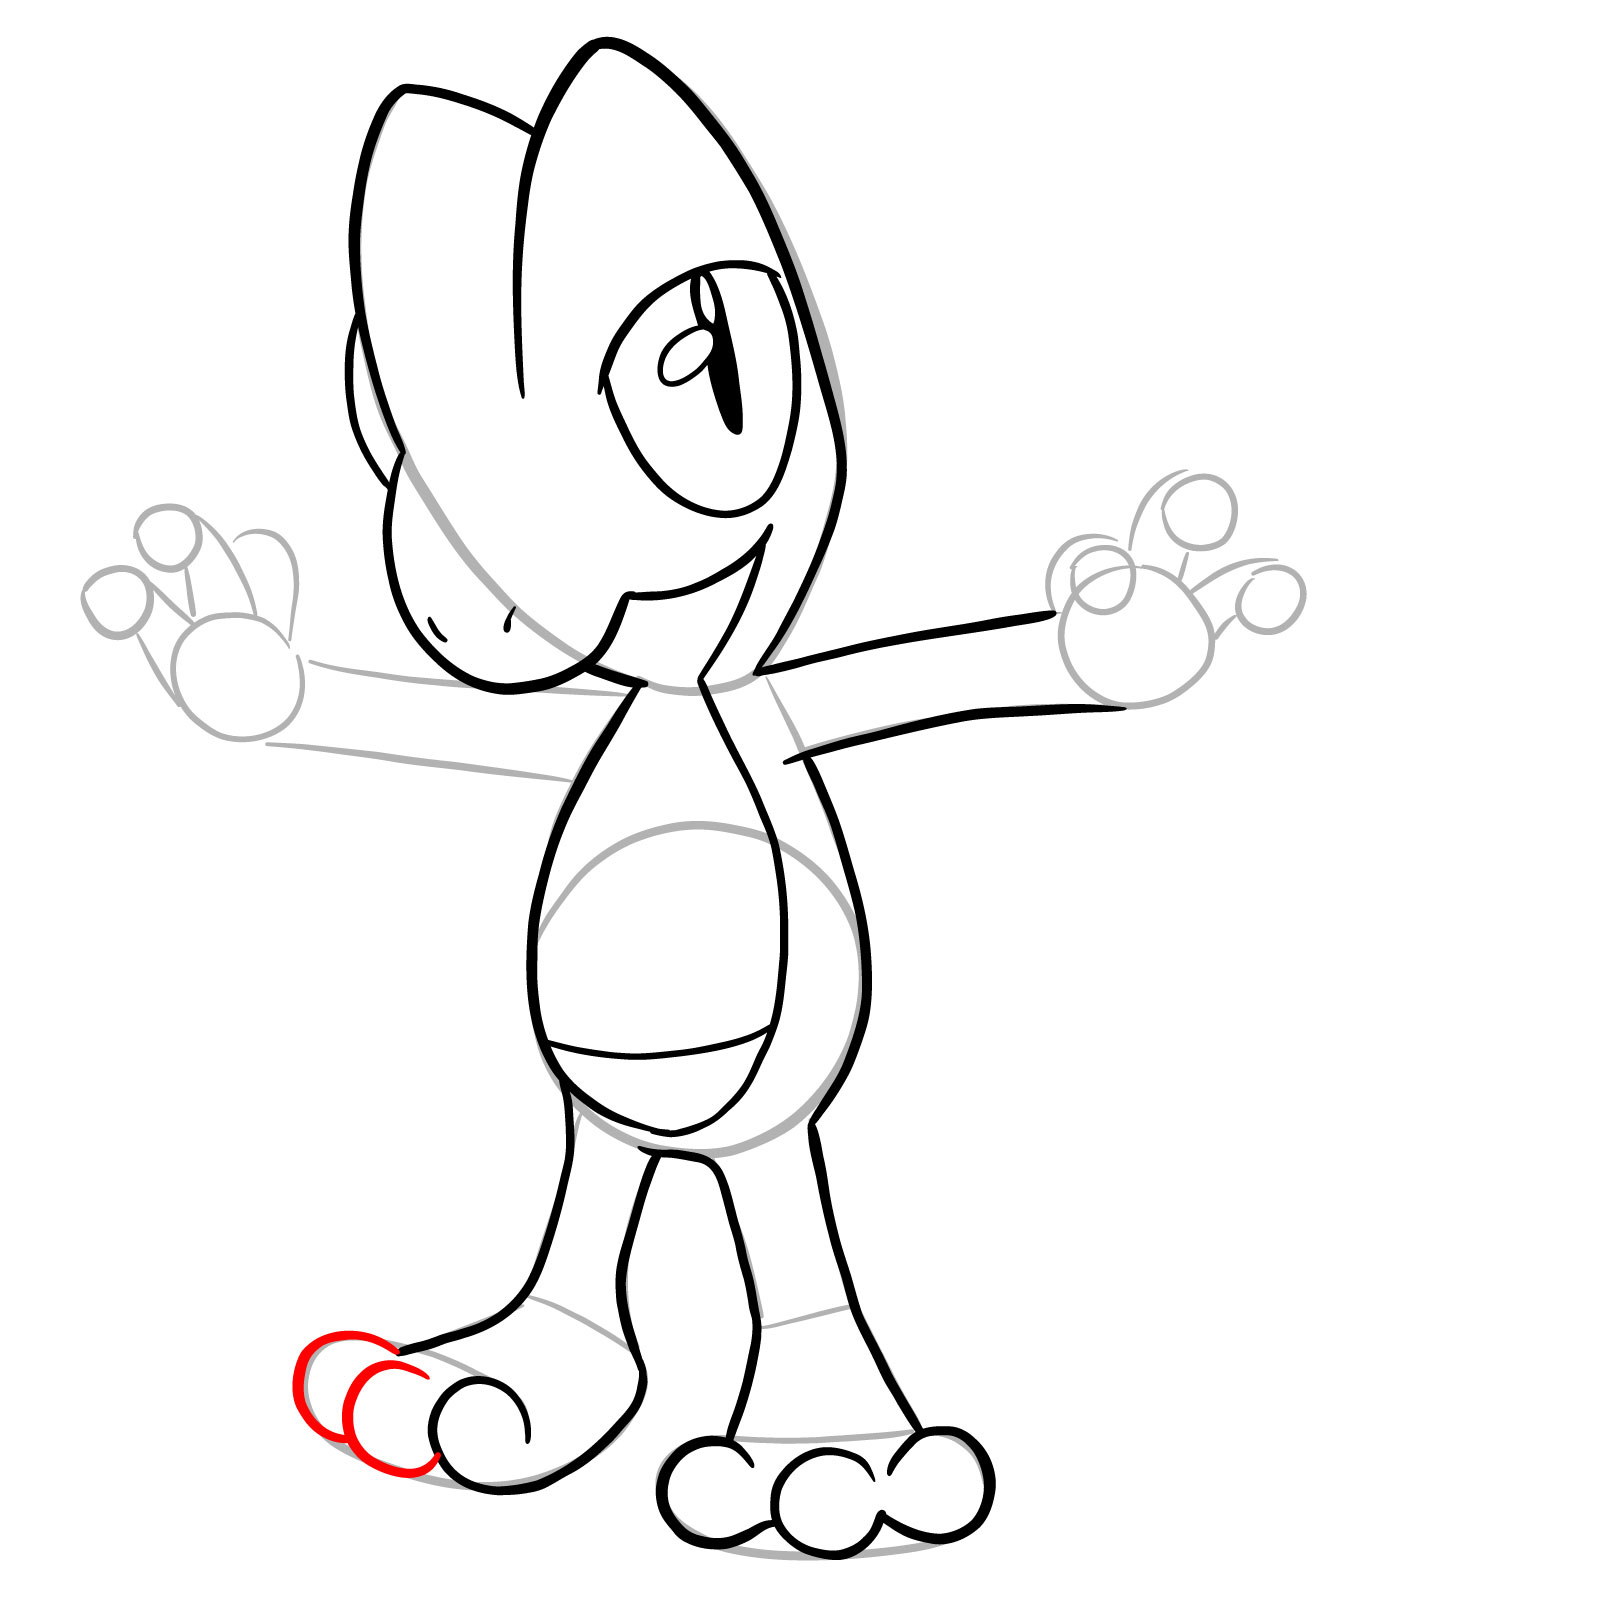 How to draw Treecko Pokemon - step 18